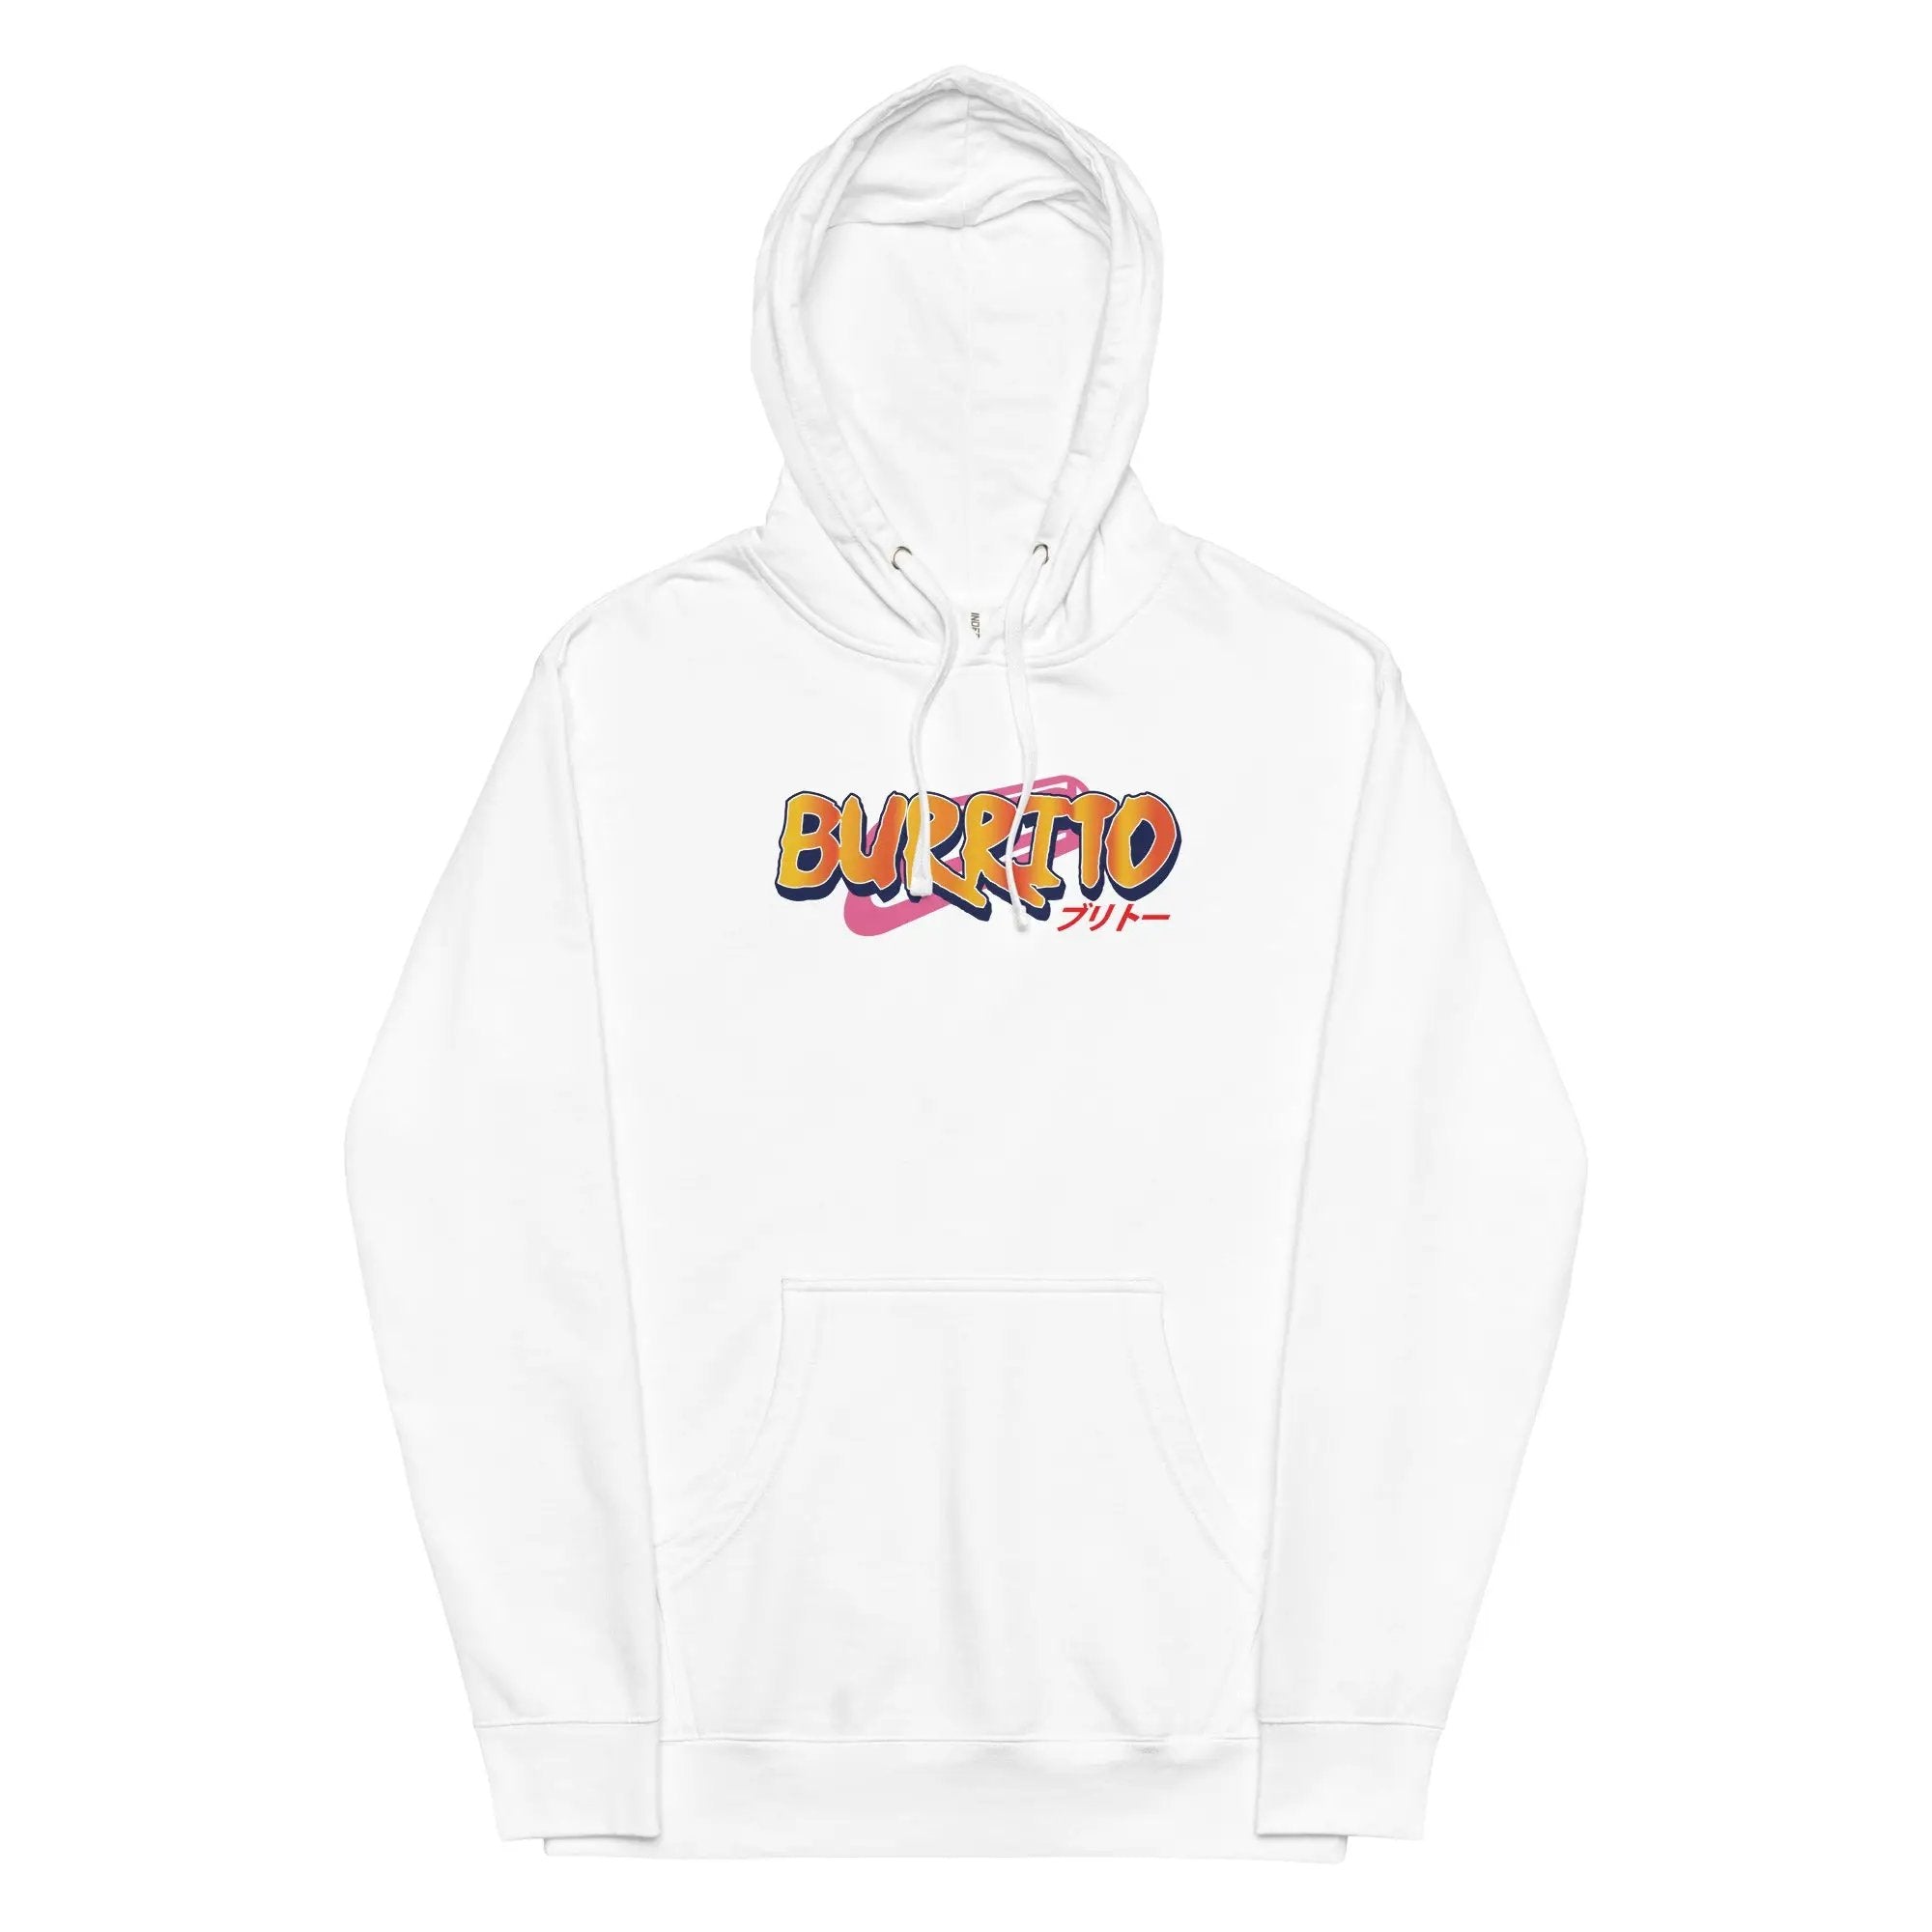 Burrito Unisex midweight hoodie